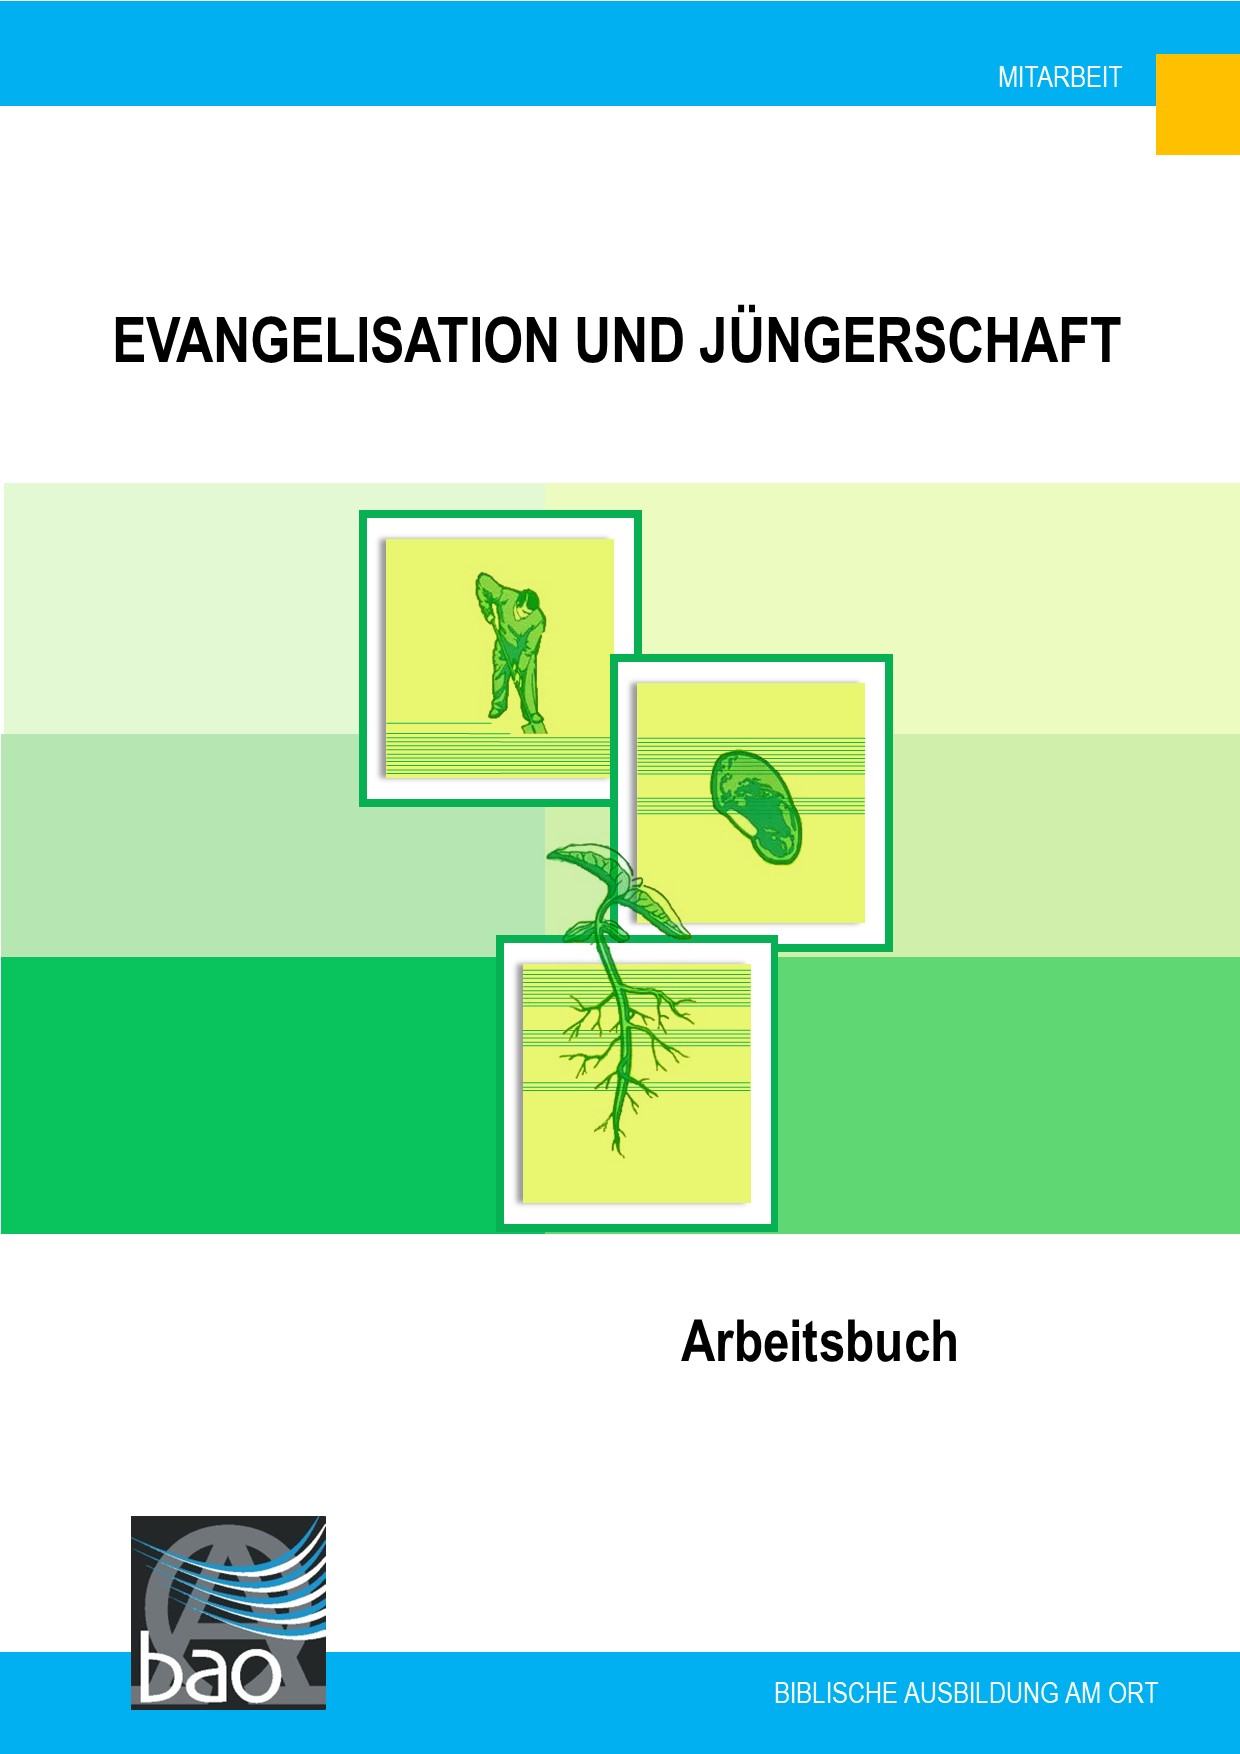 Evangelisation und Jüngerschaft-image